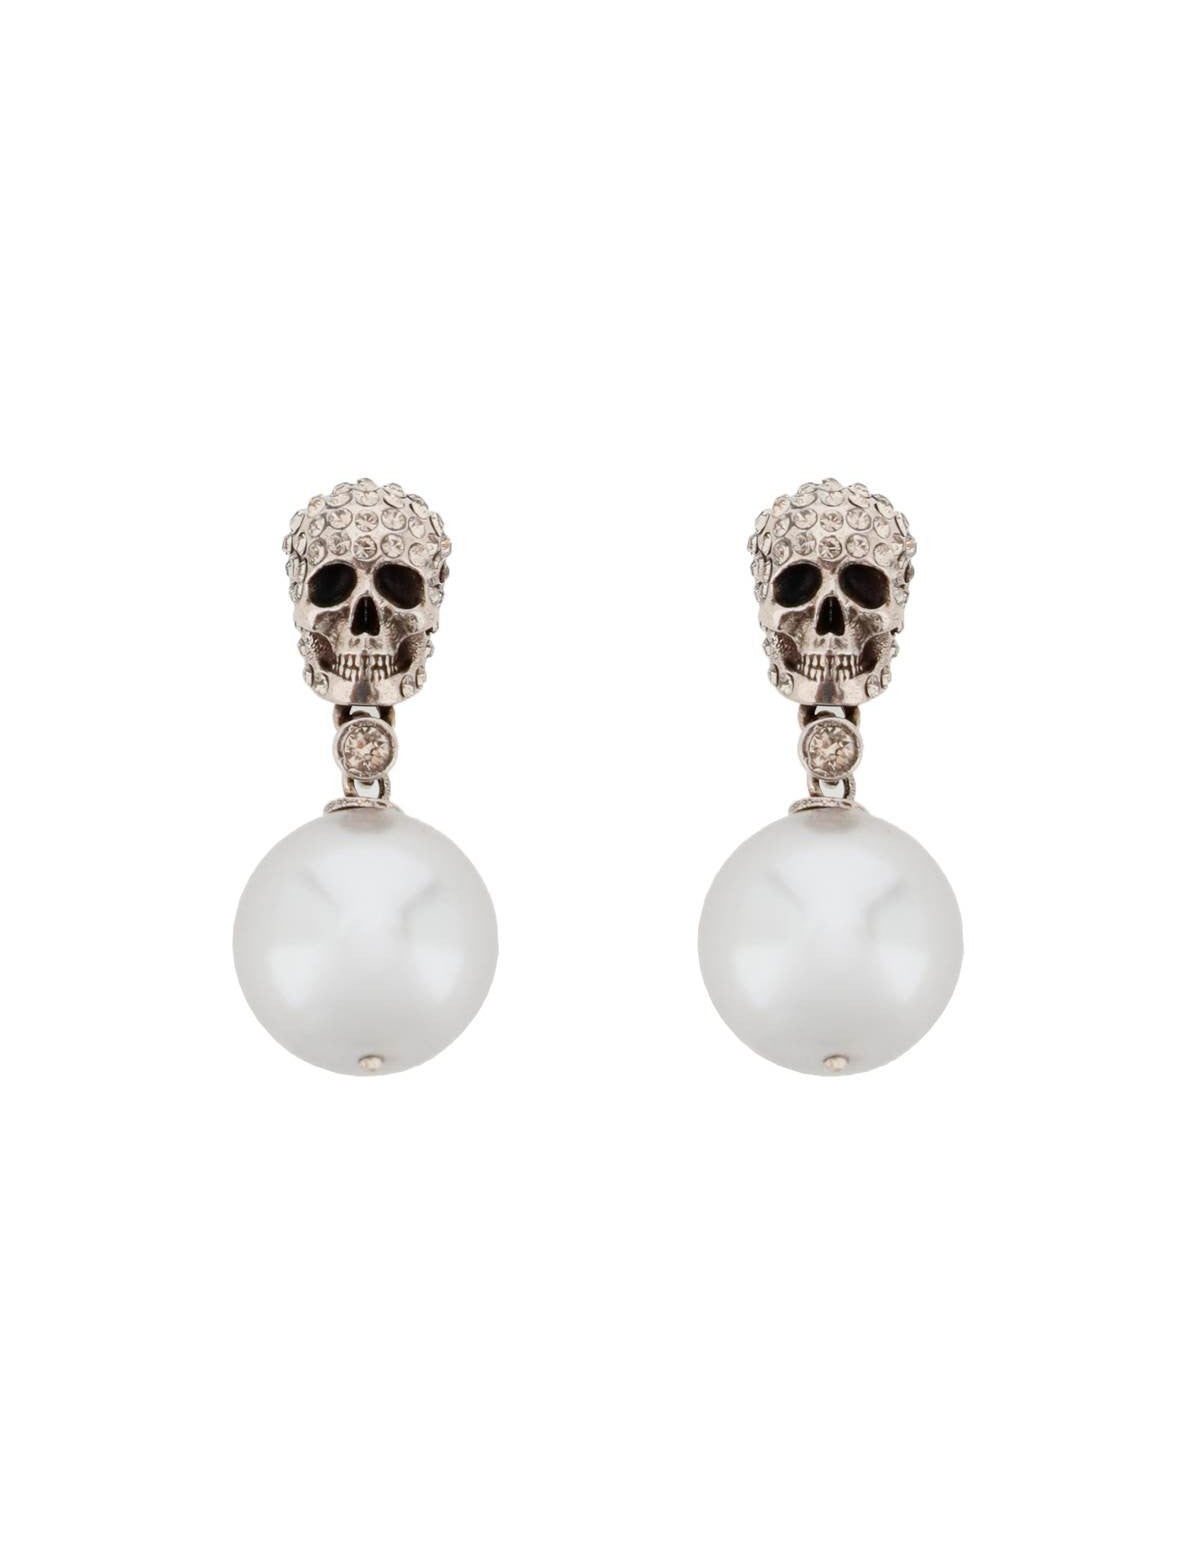 alexander-mcqueen-pearl-skull-earrings-with-crystal-pave.jpg